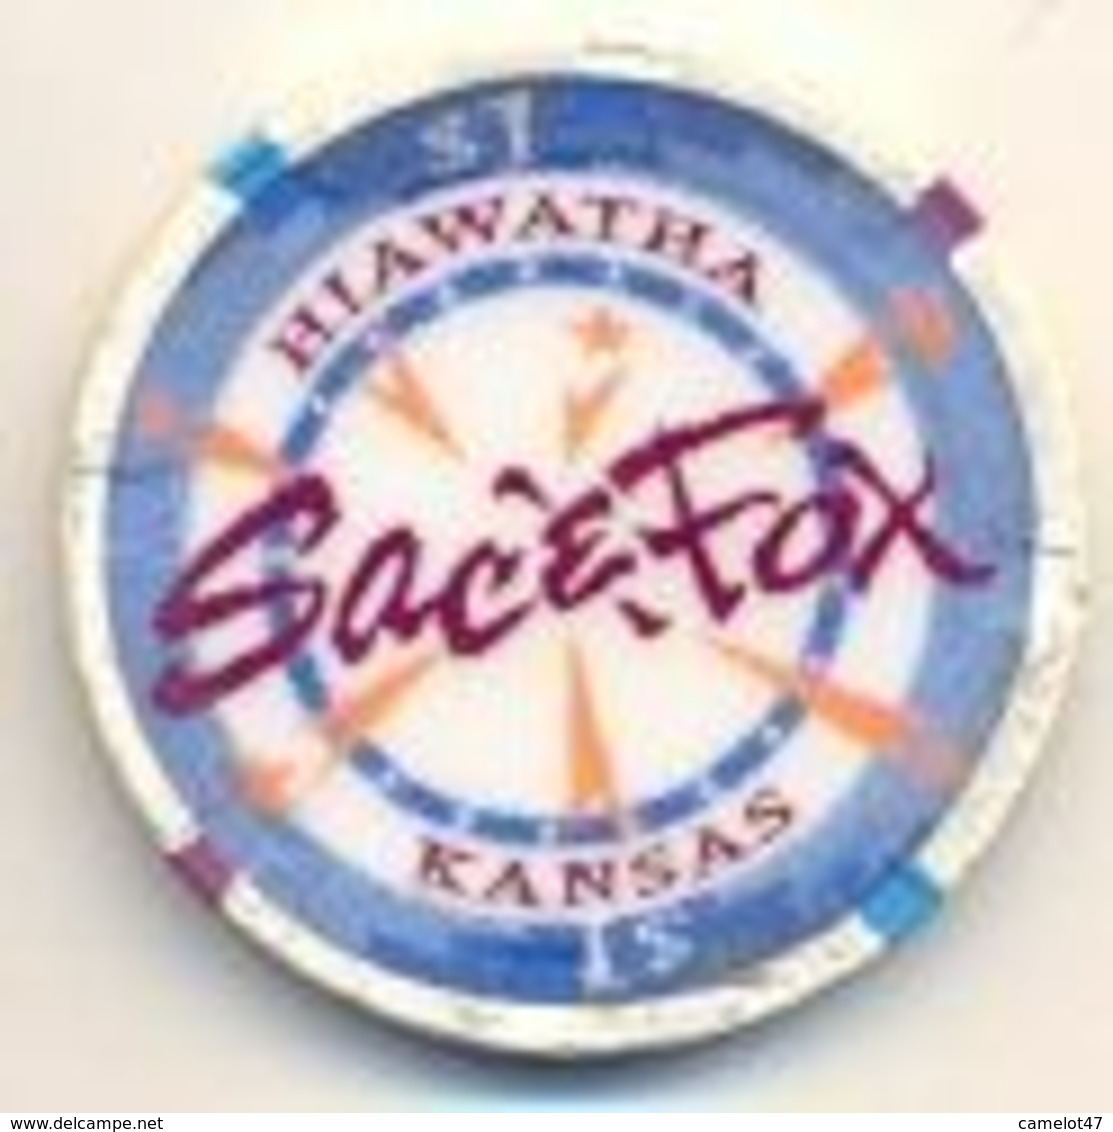 Sac & Fox Casino, Hiawatha, Kansas, U.S.A. $1 Chip, Used Condition, # Sac&fox-1 - Casino